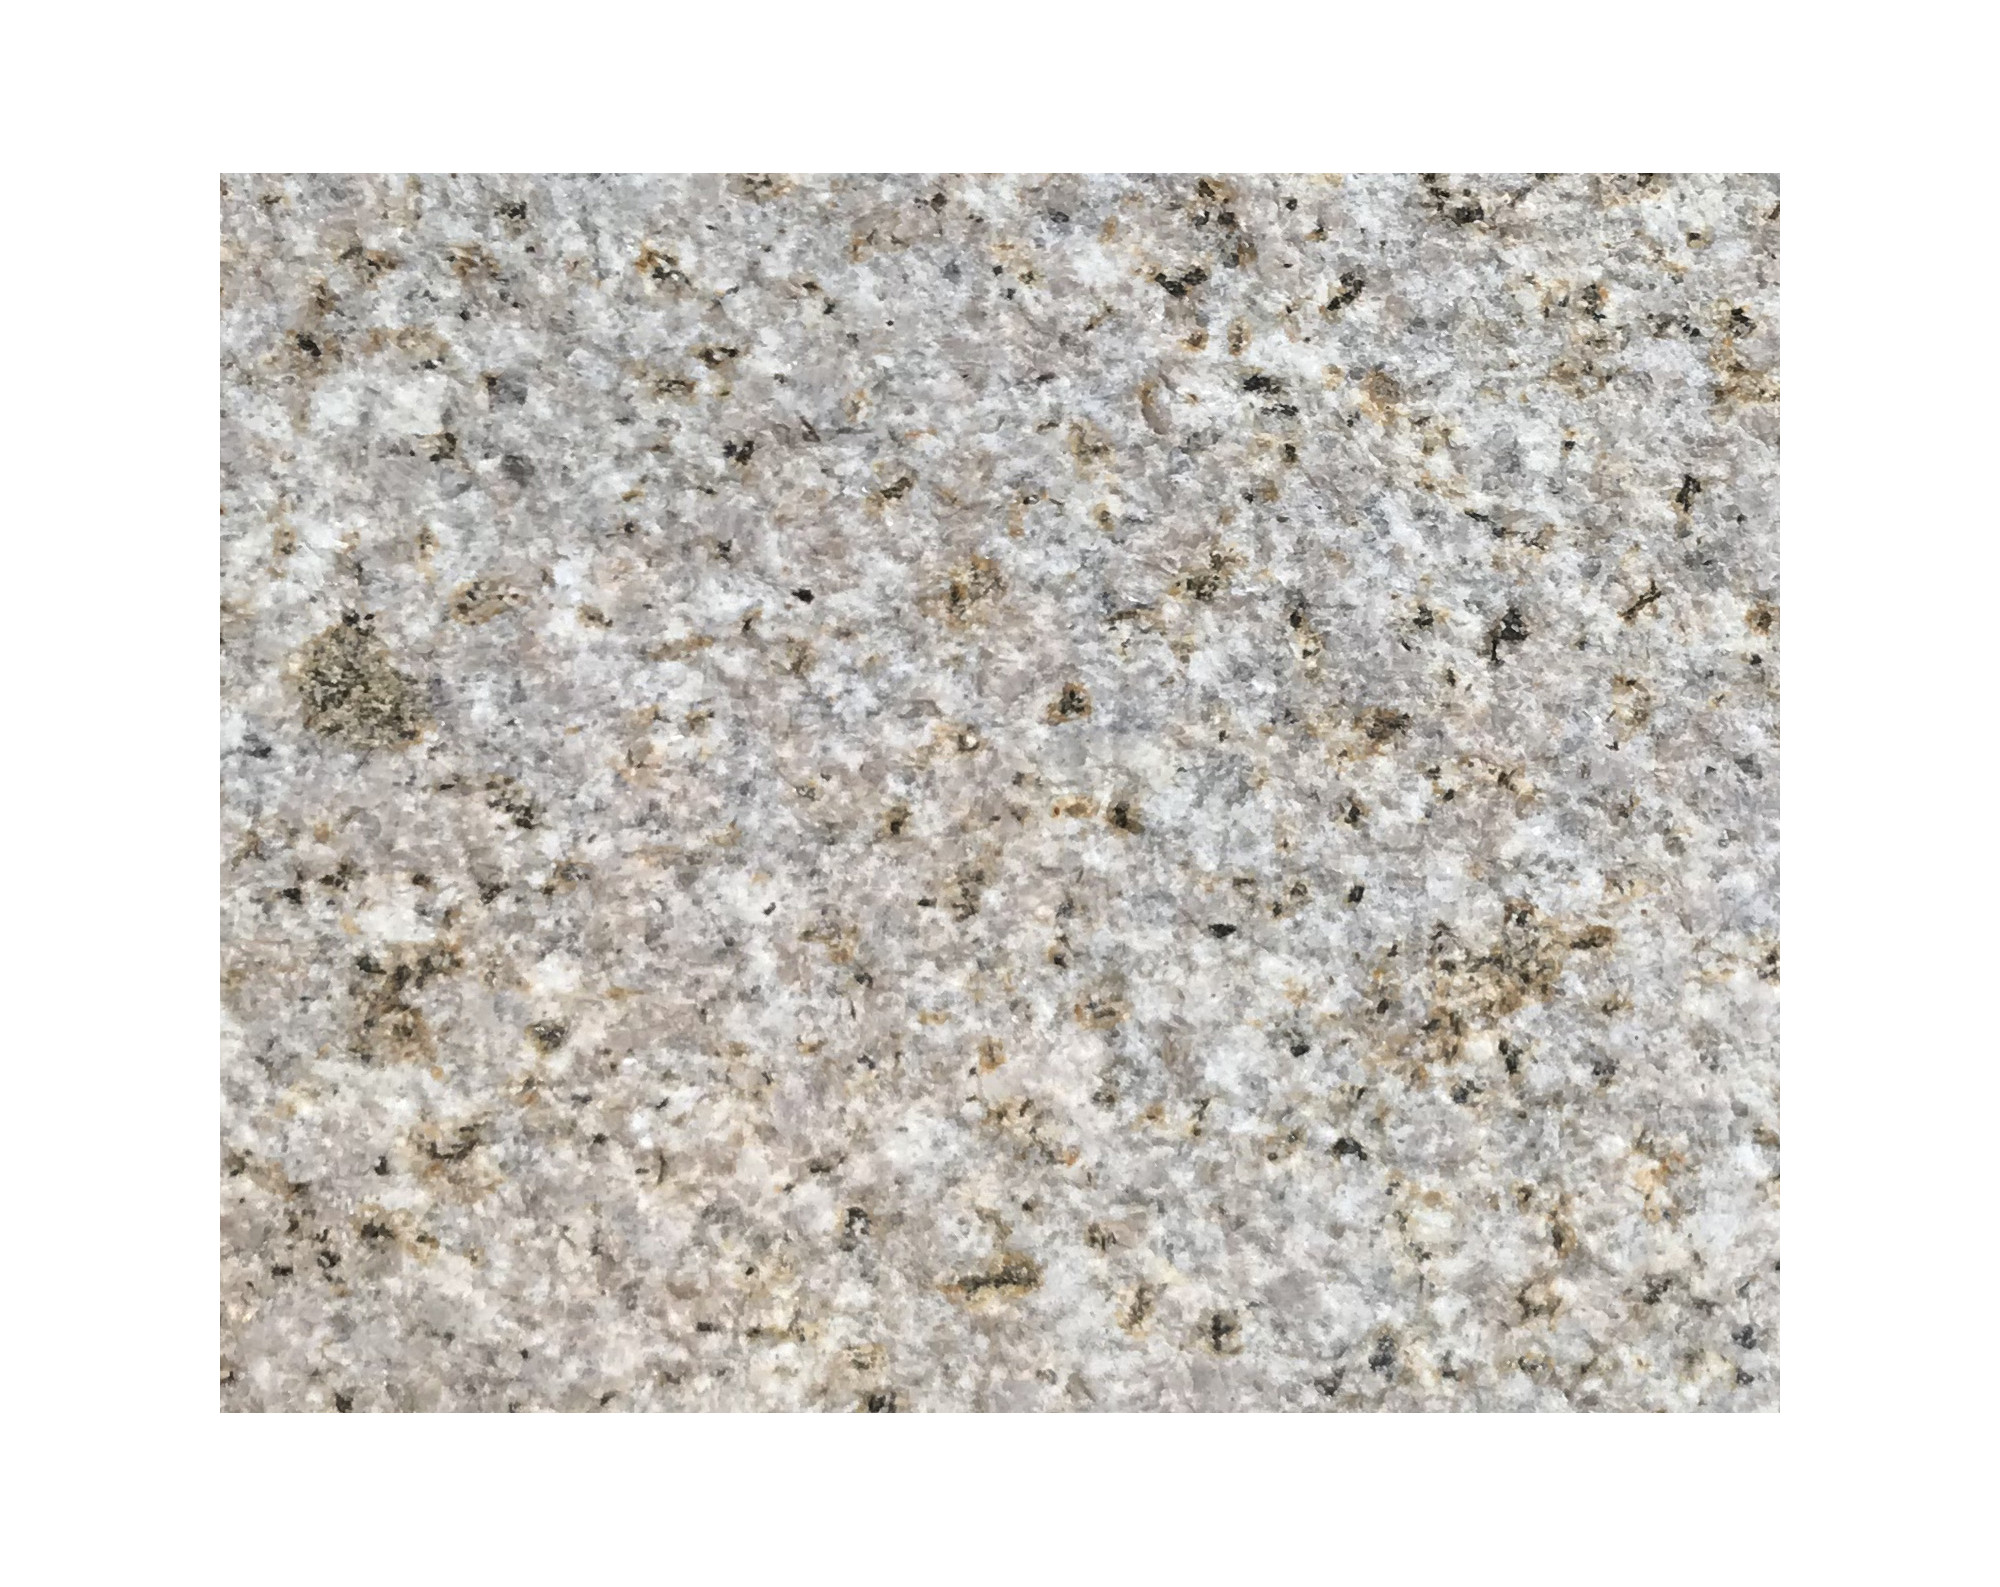 Harmo roc napoliset, natura-serie, ovaal d: 6,00mx11,30m, zachtzand, graniet